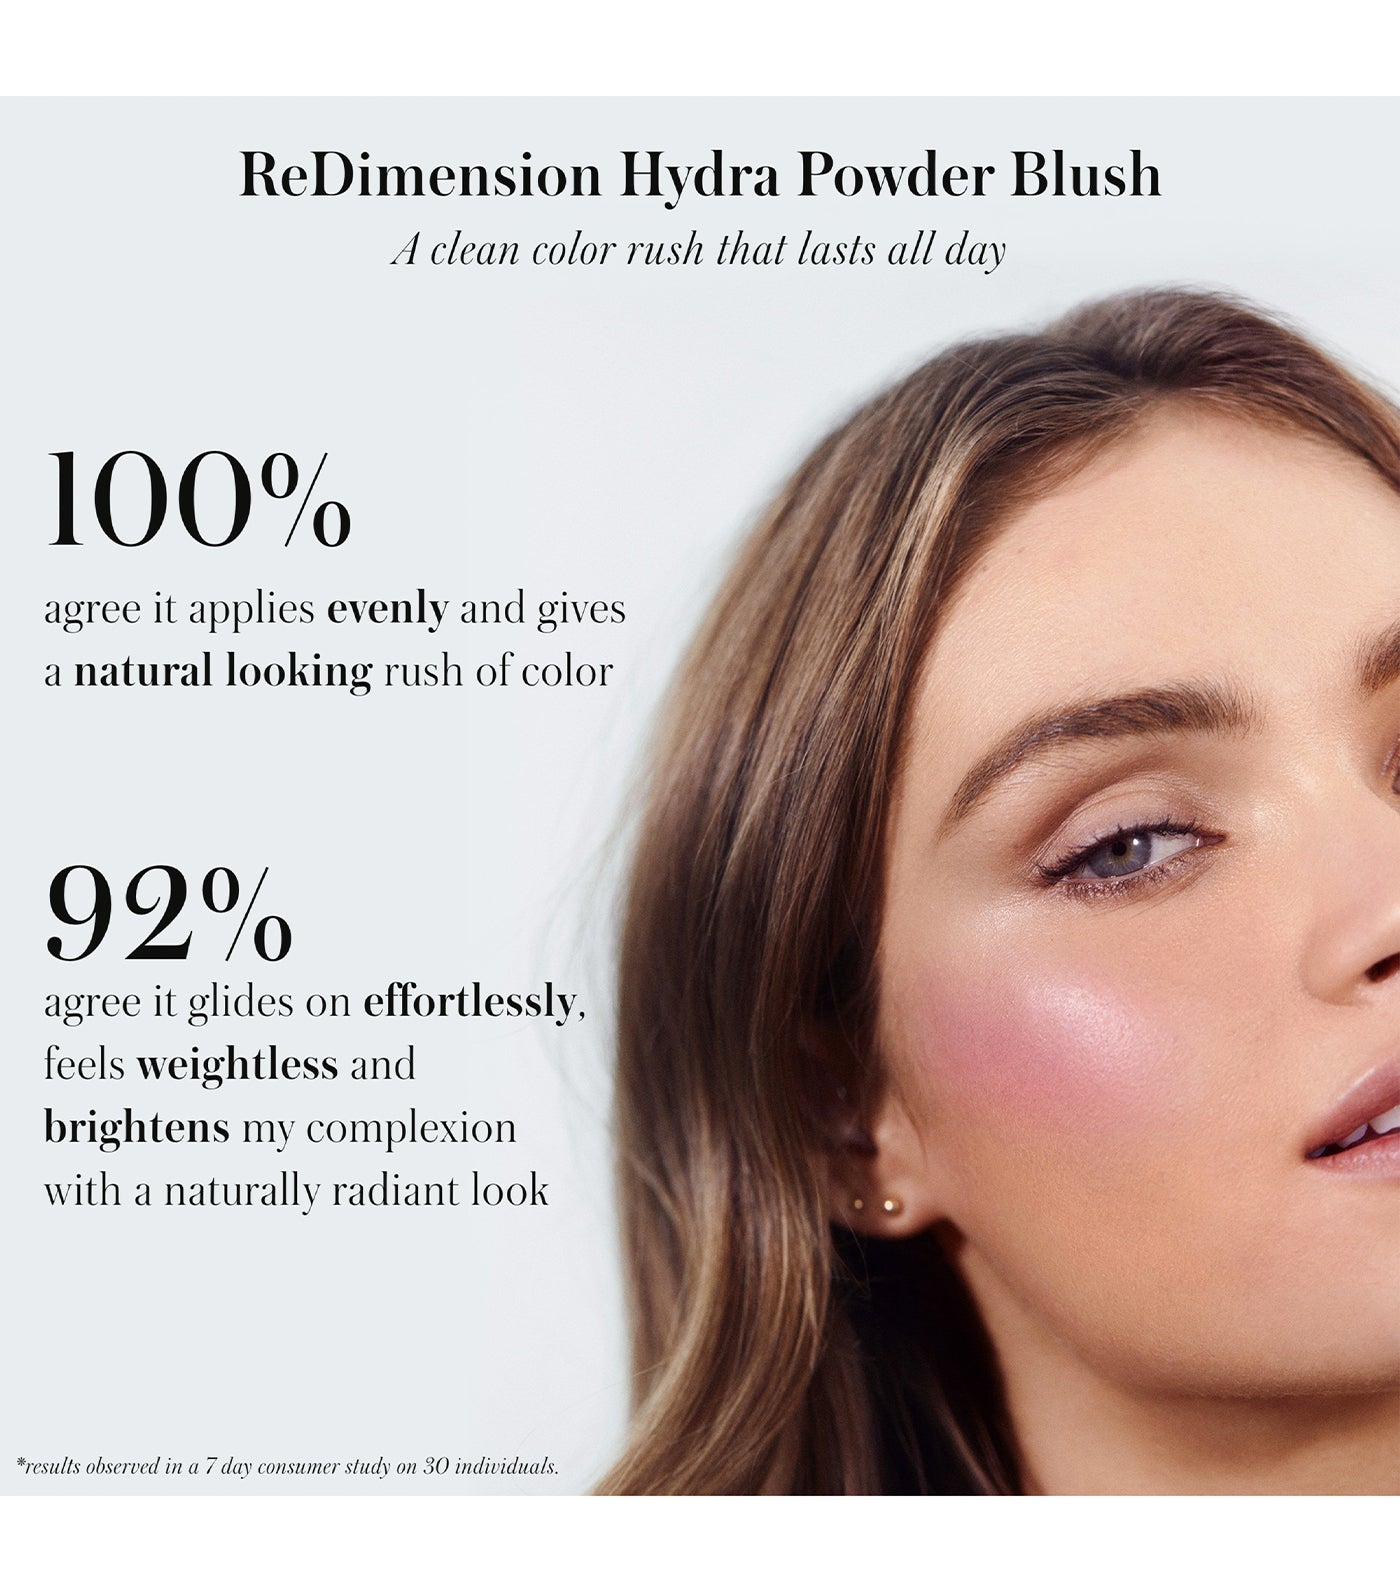 ReDimension Hydra Powder Blush